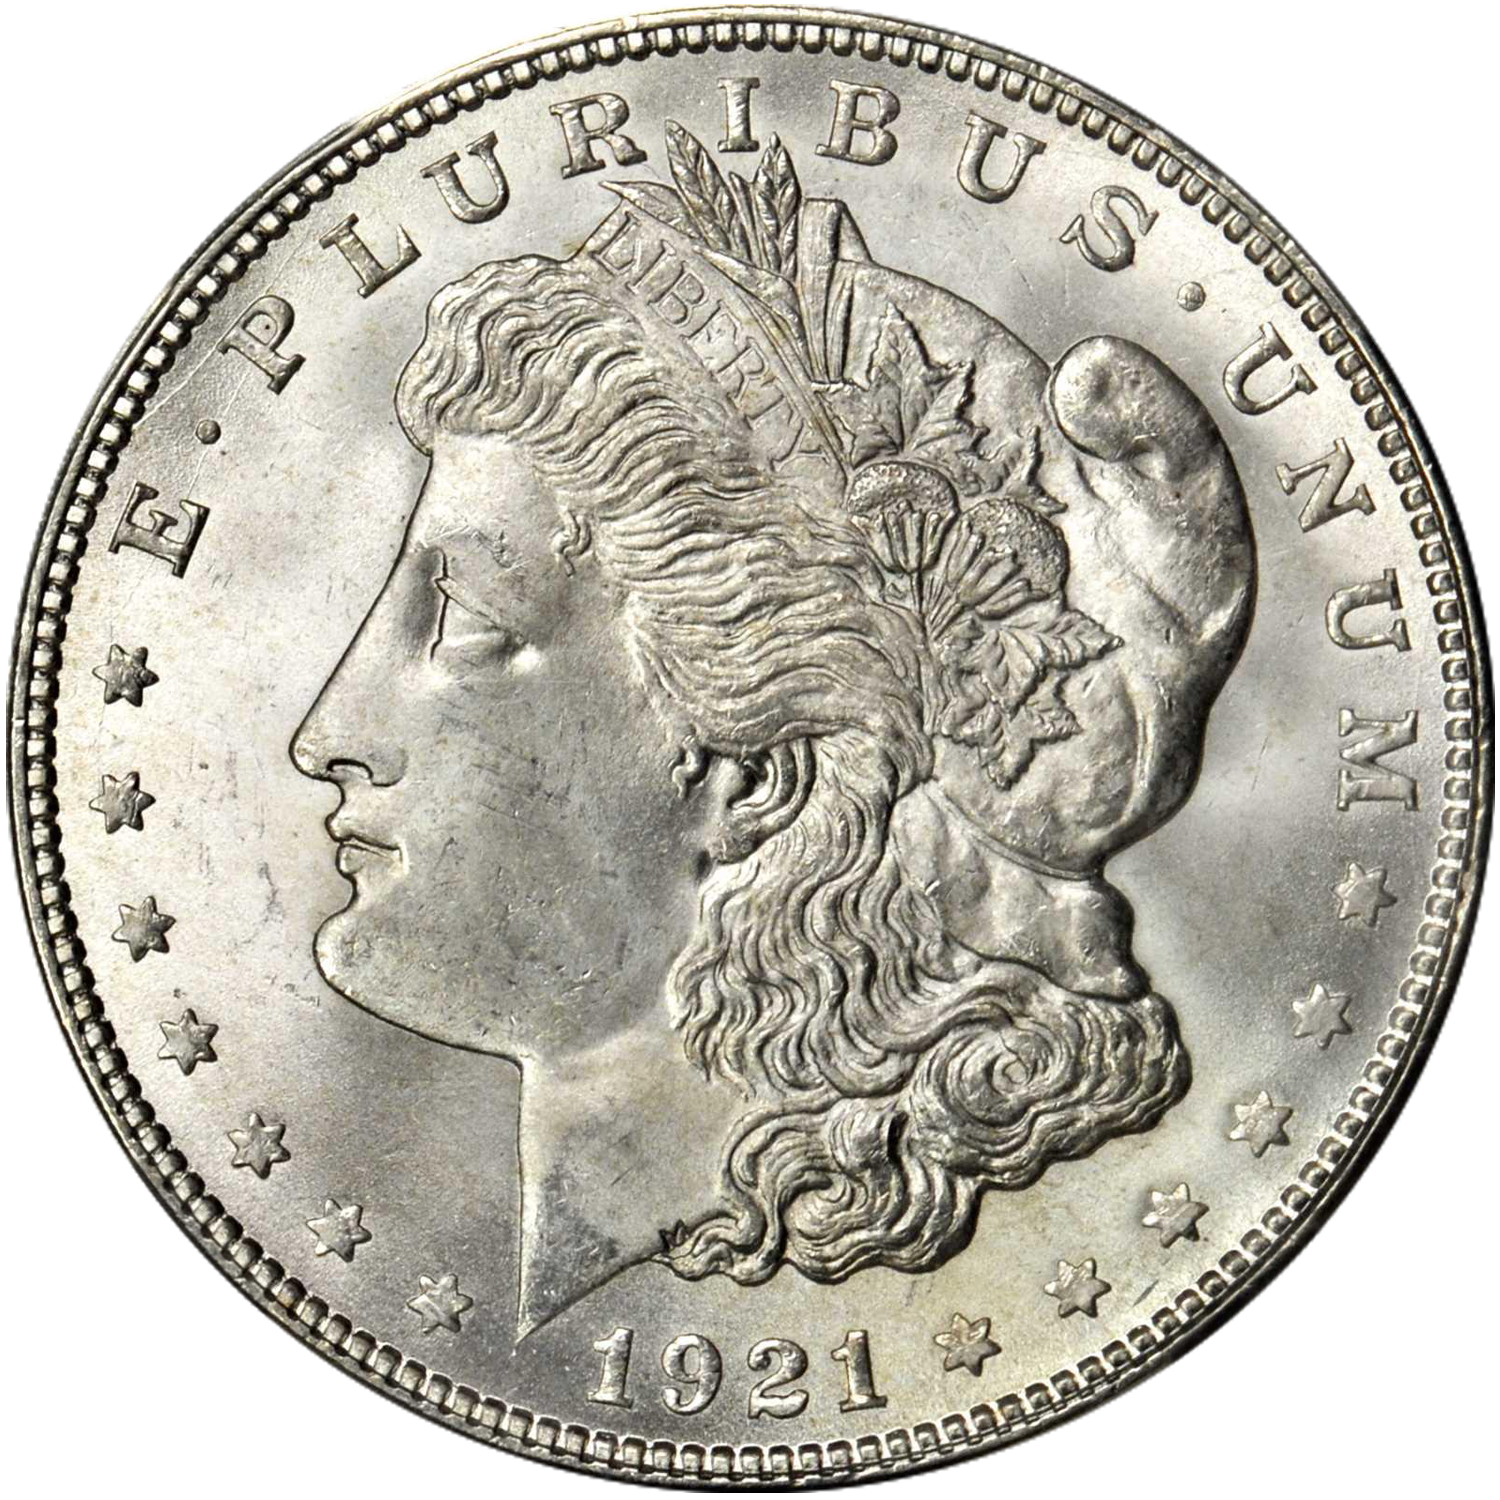 1921 denver mint morgan dollar value guide